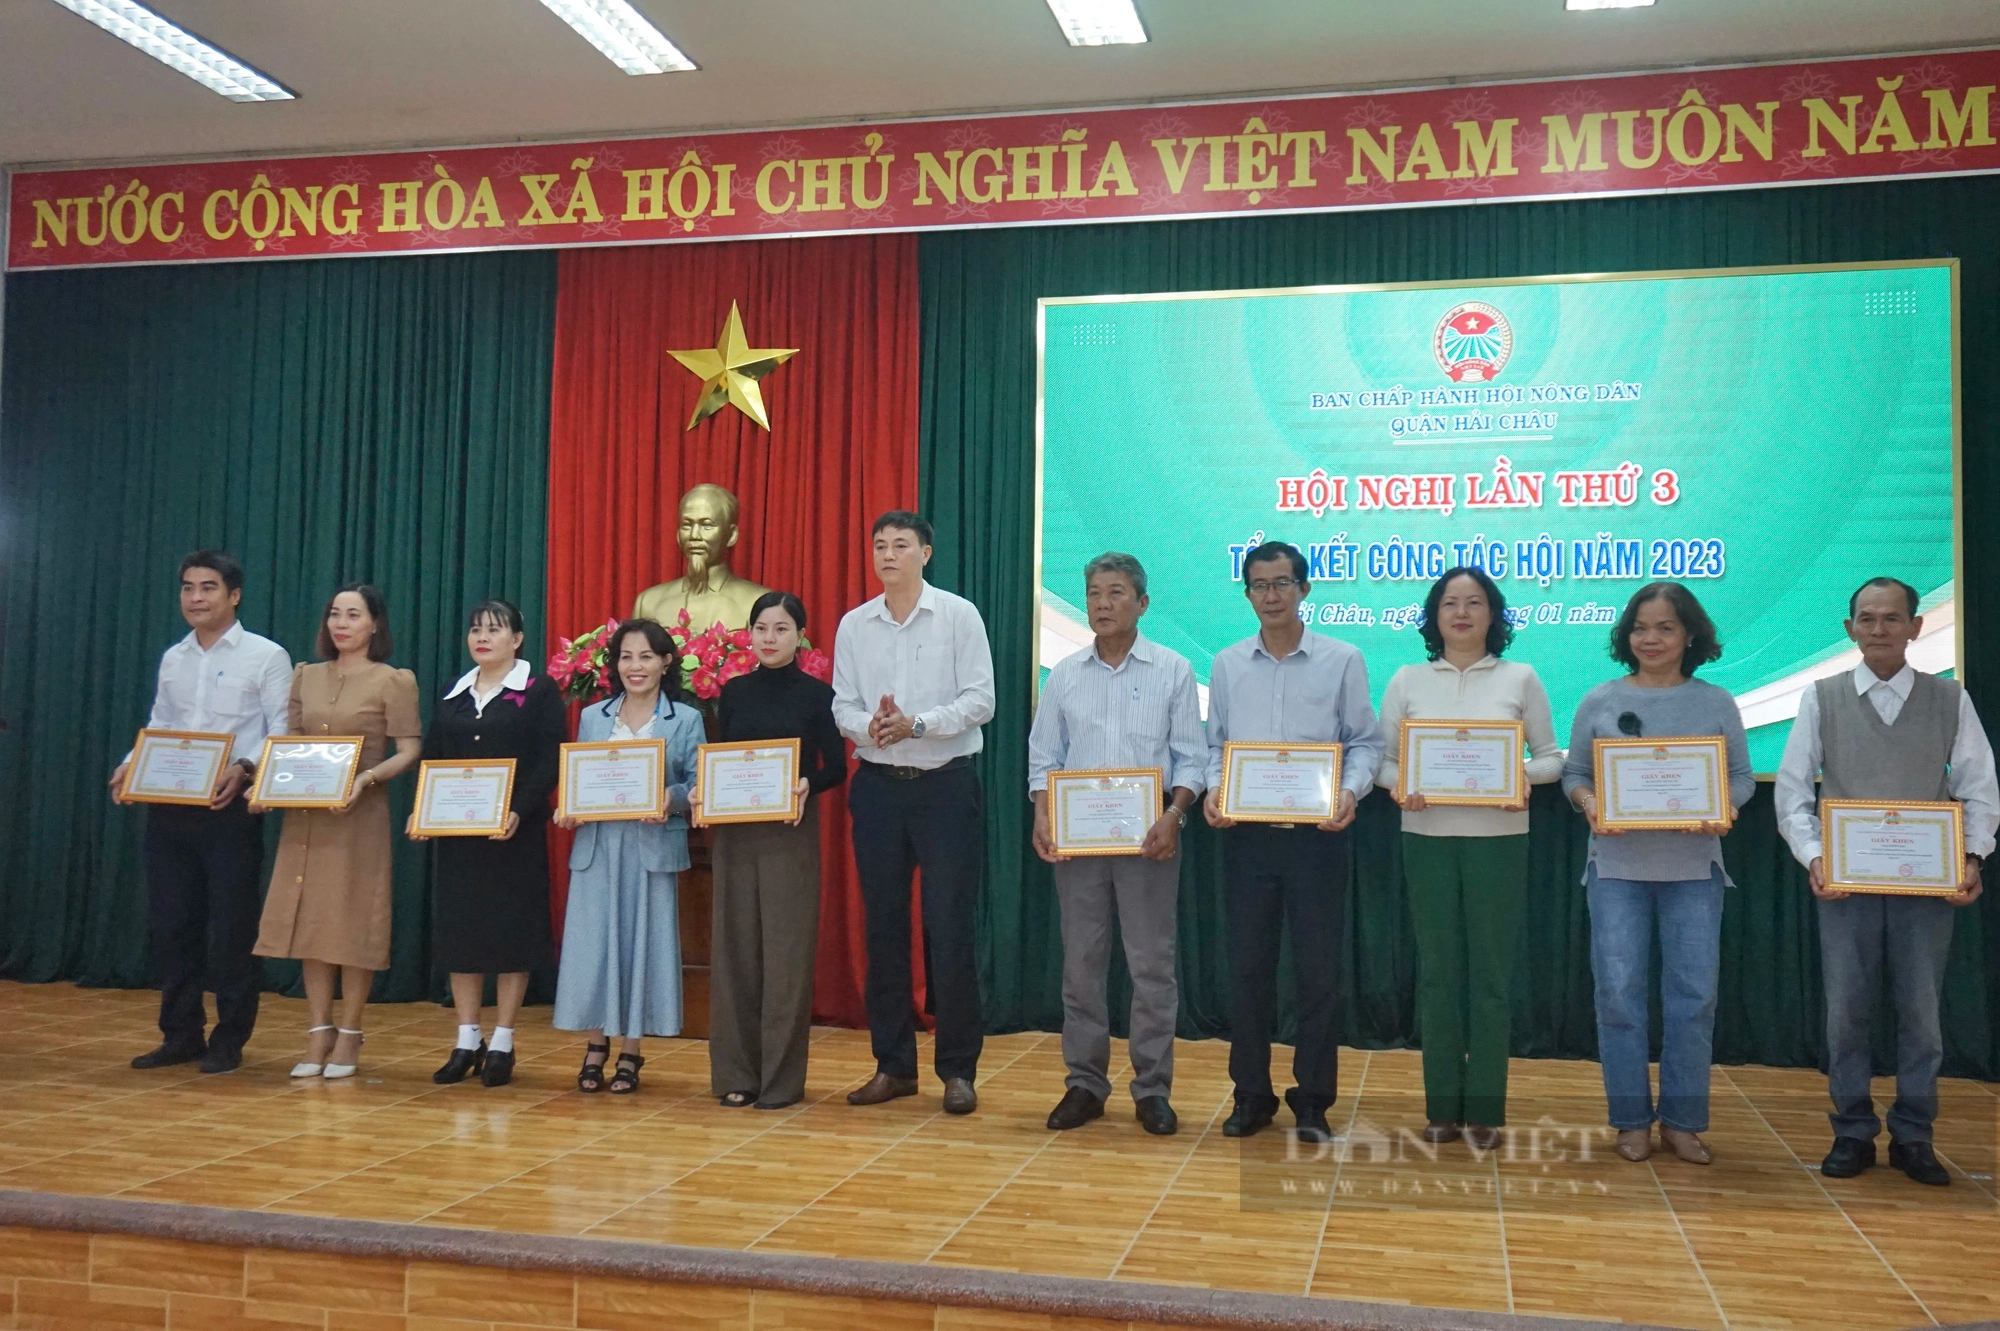 Đà Nẵng: Hội Nông dân quận Hải Châu tổng kết công tác Hội năm 2023, triển khai nhiệm vụ năm 2024- Ảnh 7.